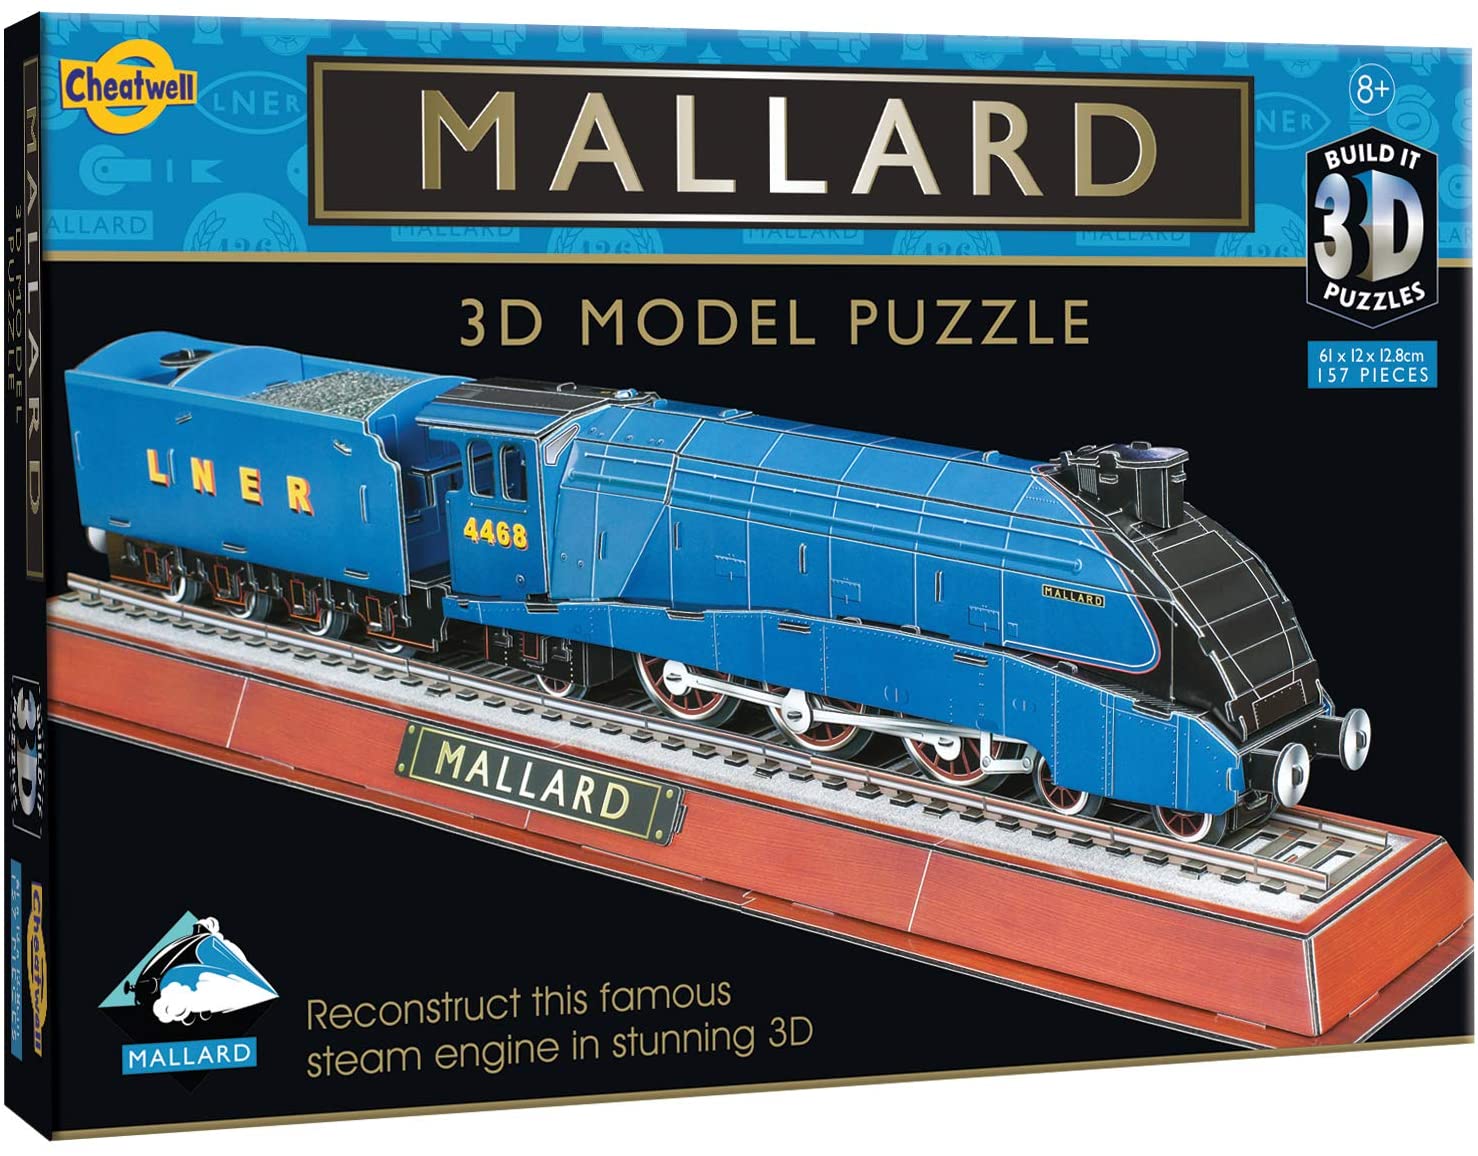 Build It 3D Puzzle - Mallard